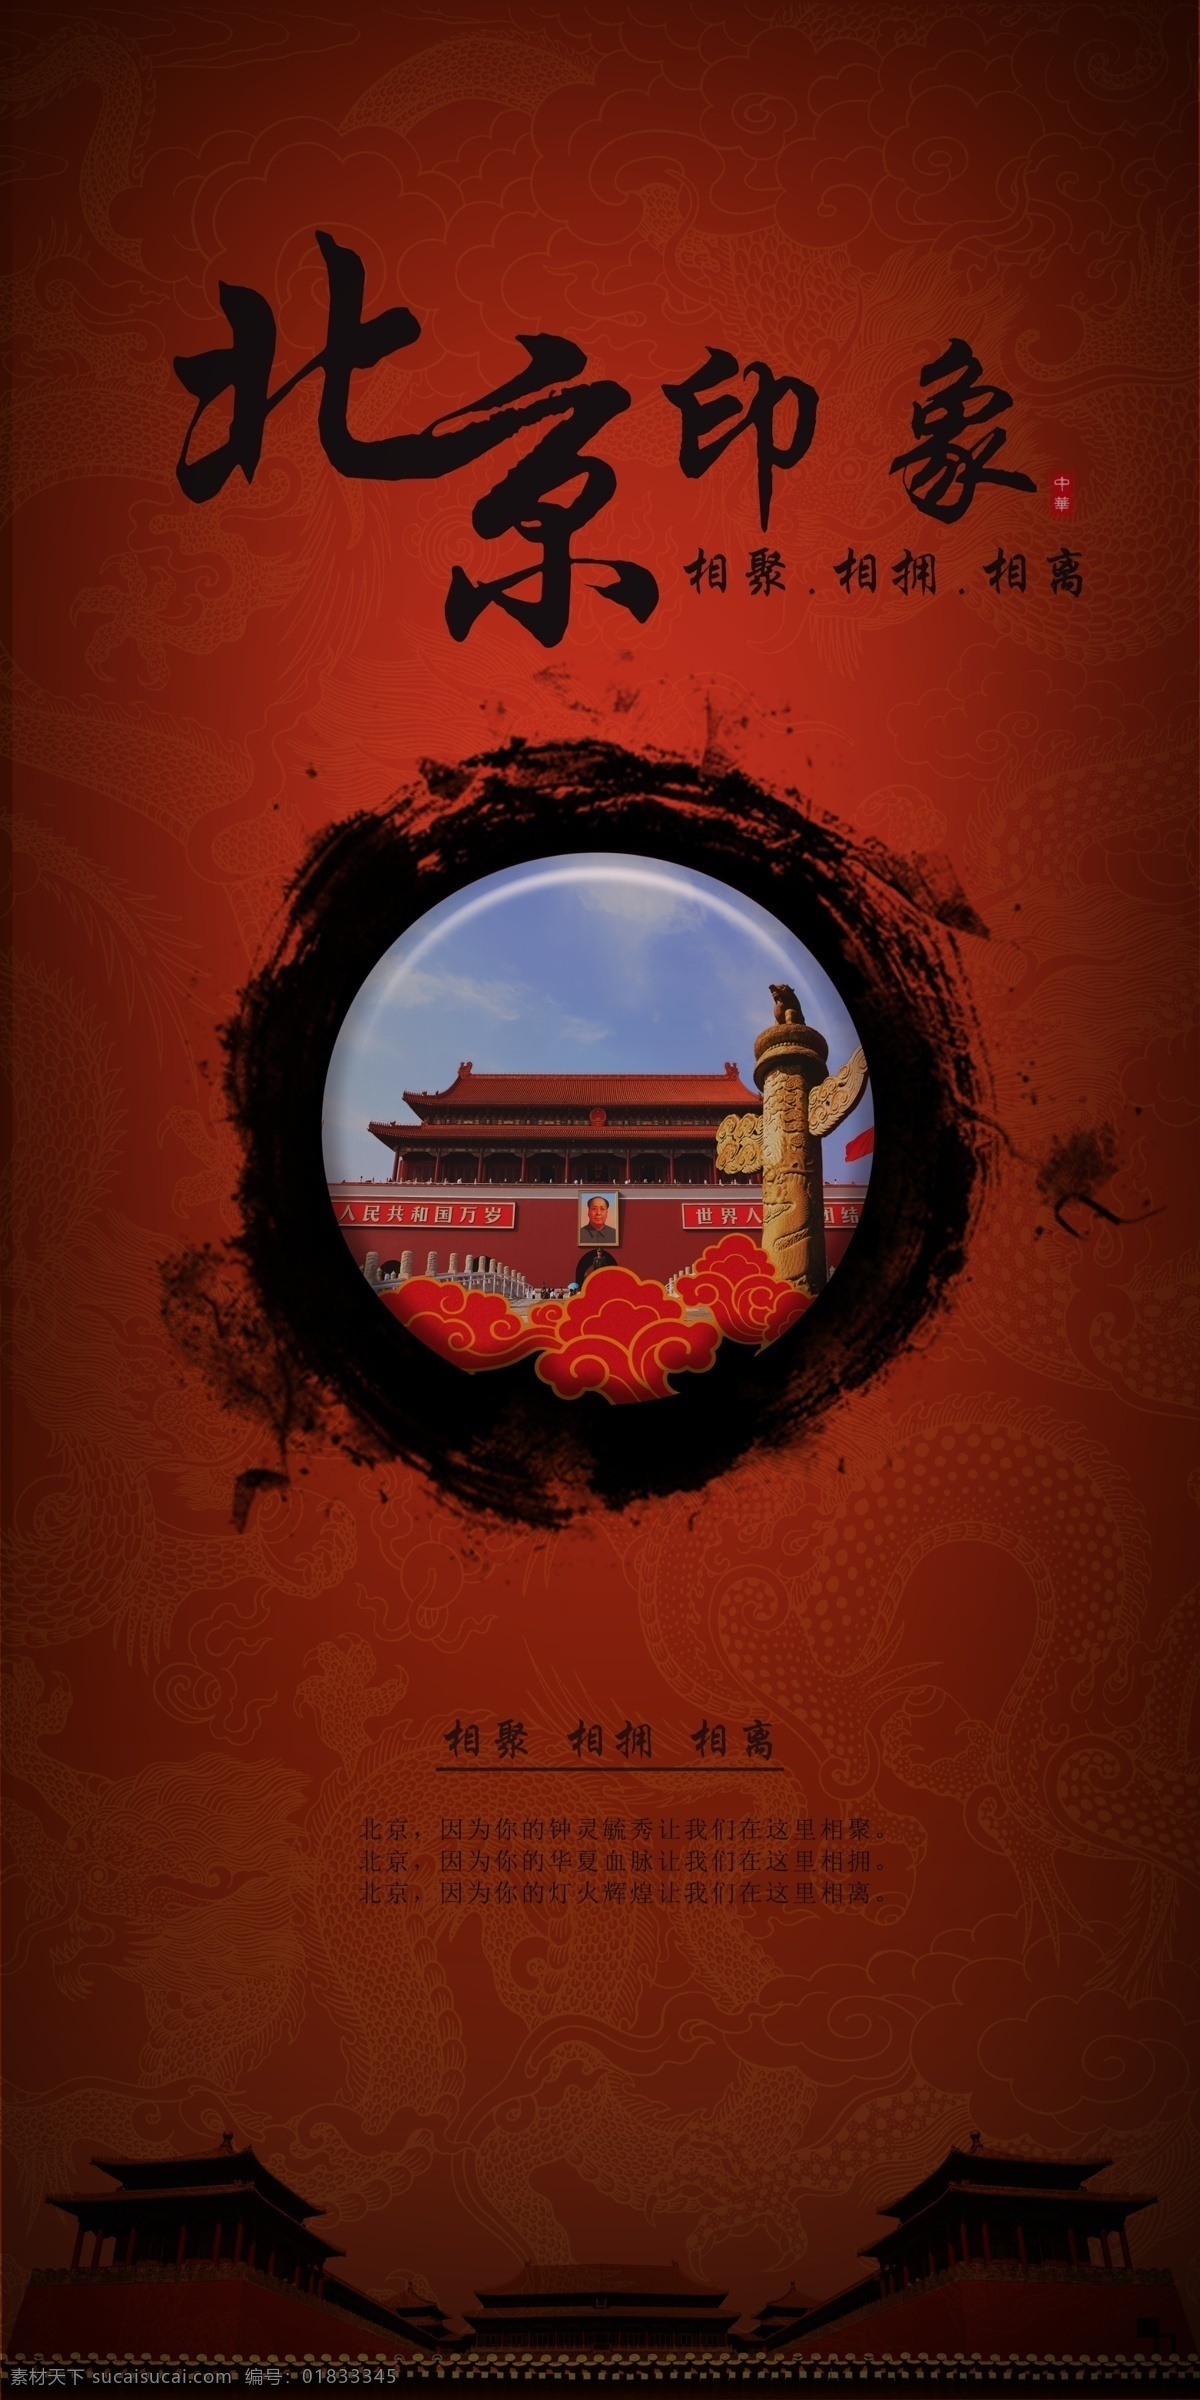 北京印象 北京 北京海报 海报 印象海报 红色